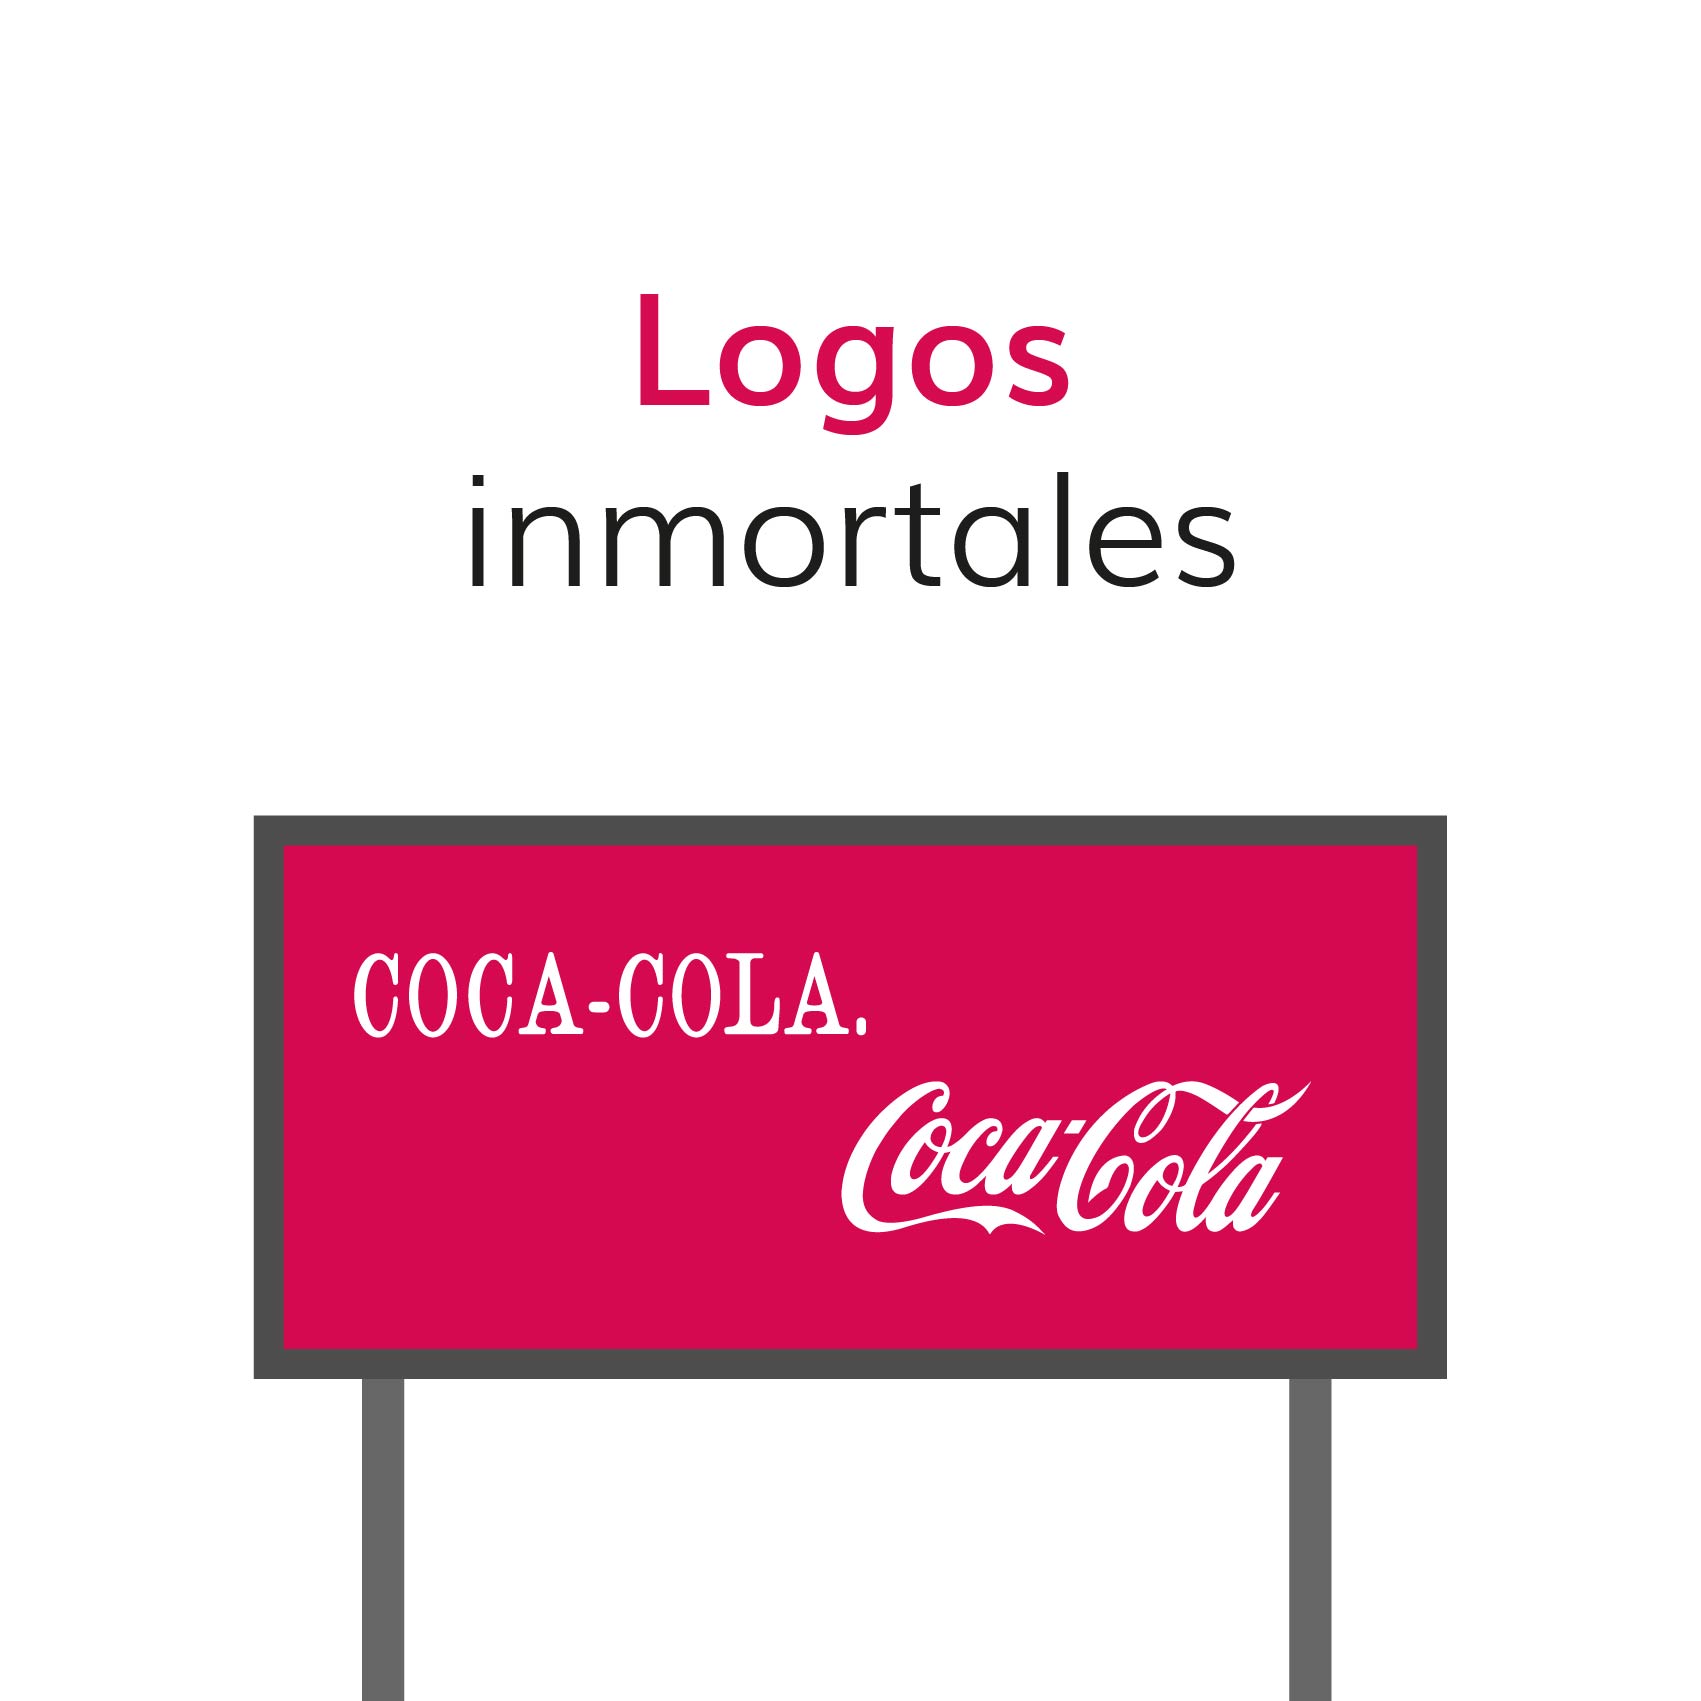 Logos-inmortales_logos inmortales